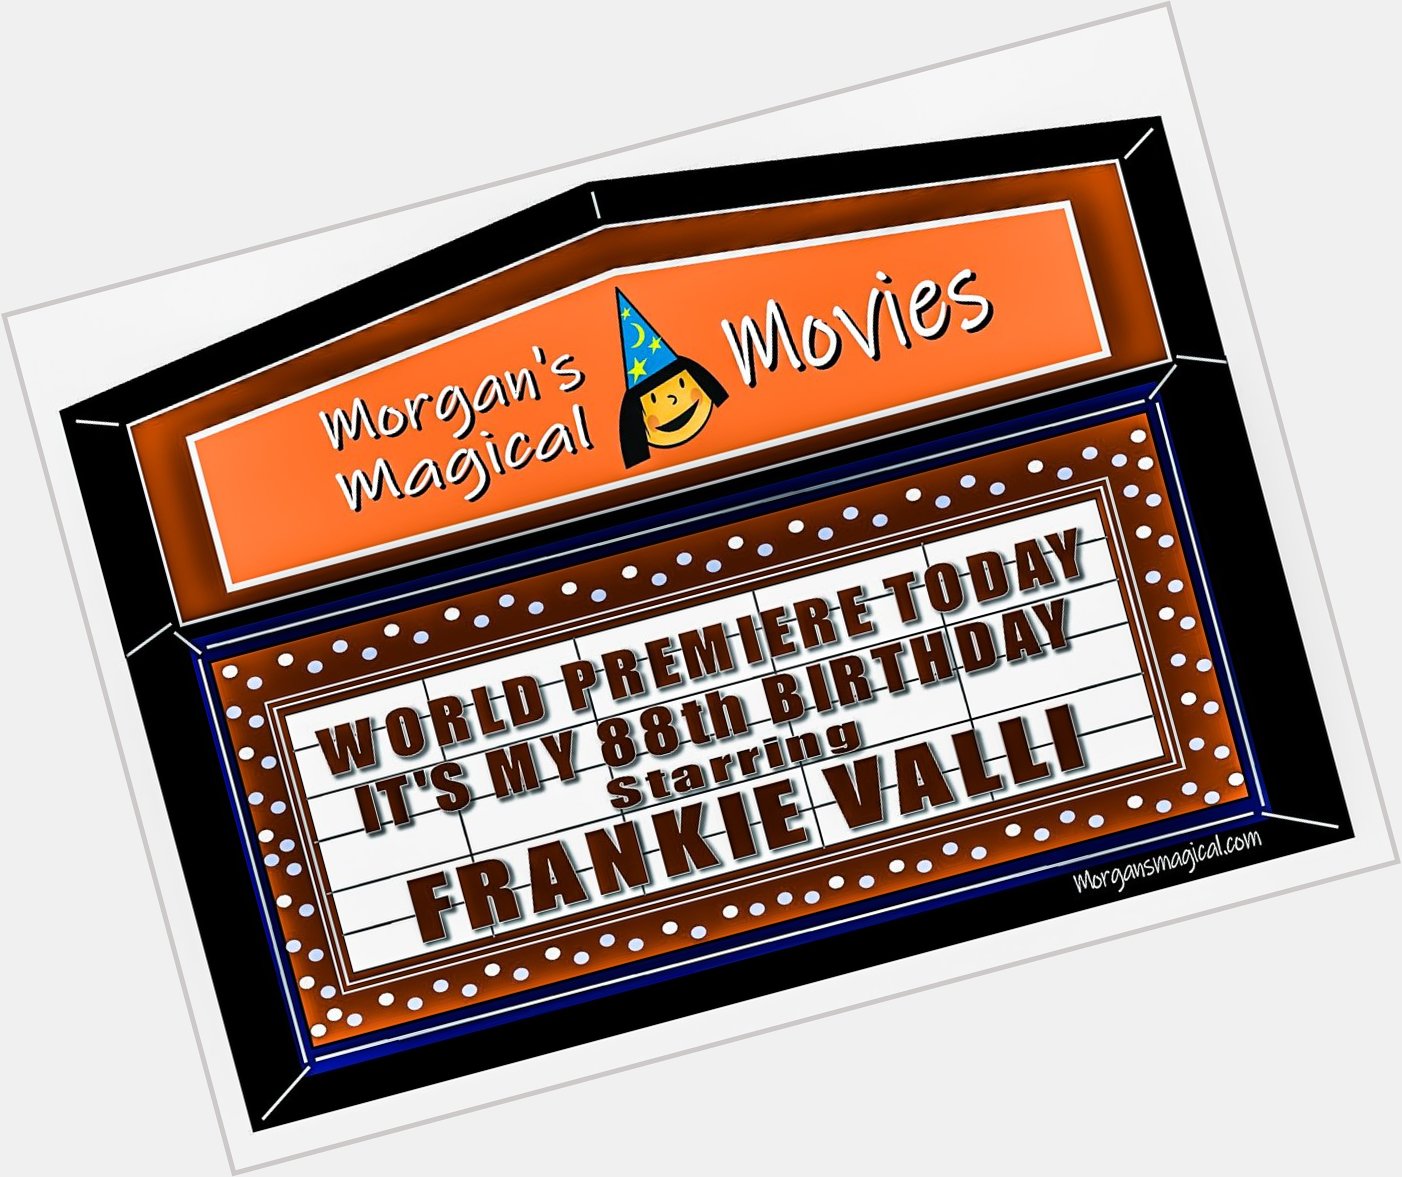 Happy Birthday Frankie Valli! 